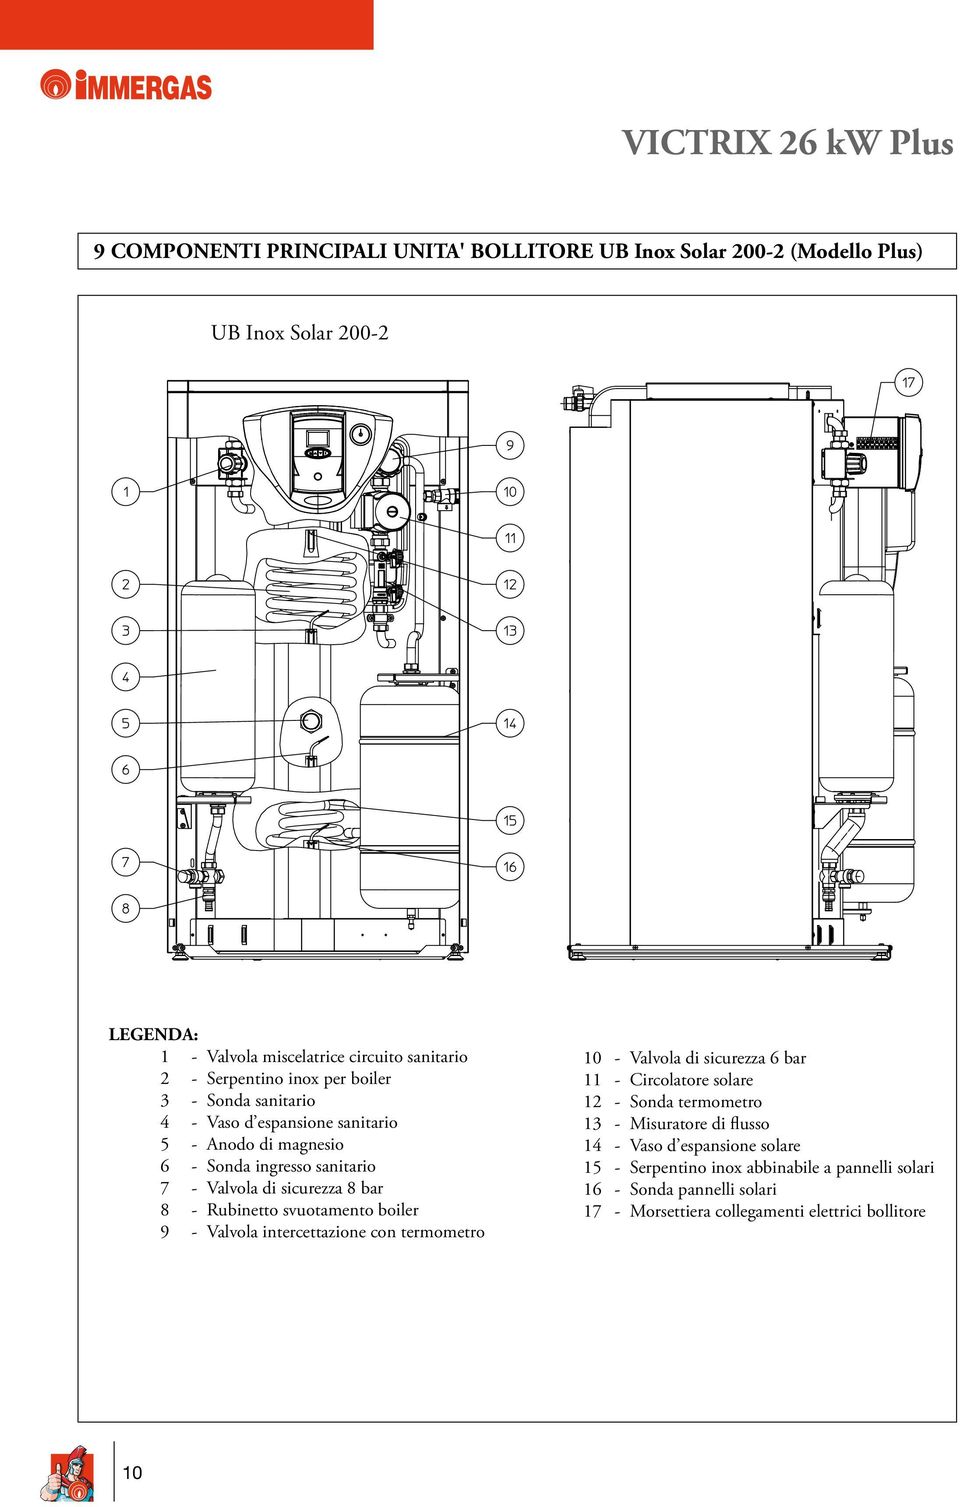 svuotamento boiler 9 - Valvola intercettazione con termometro 10 - Valvola di sicurezza 6 bar 11 - Circolatore solare 12 - Sonda termometro 13 - Misuratore di